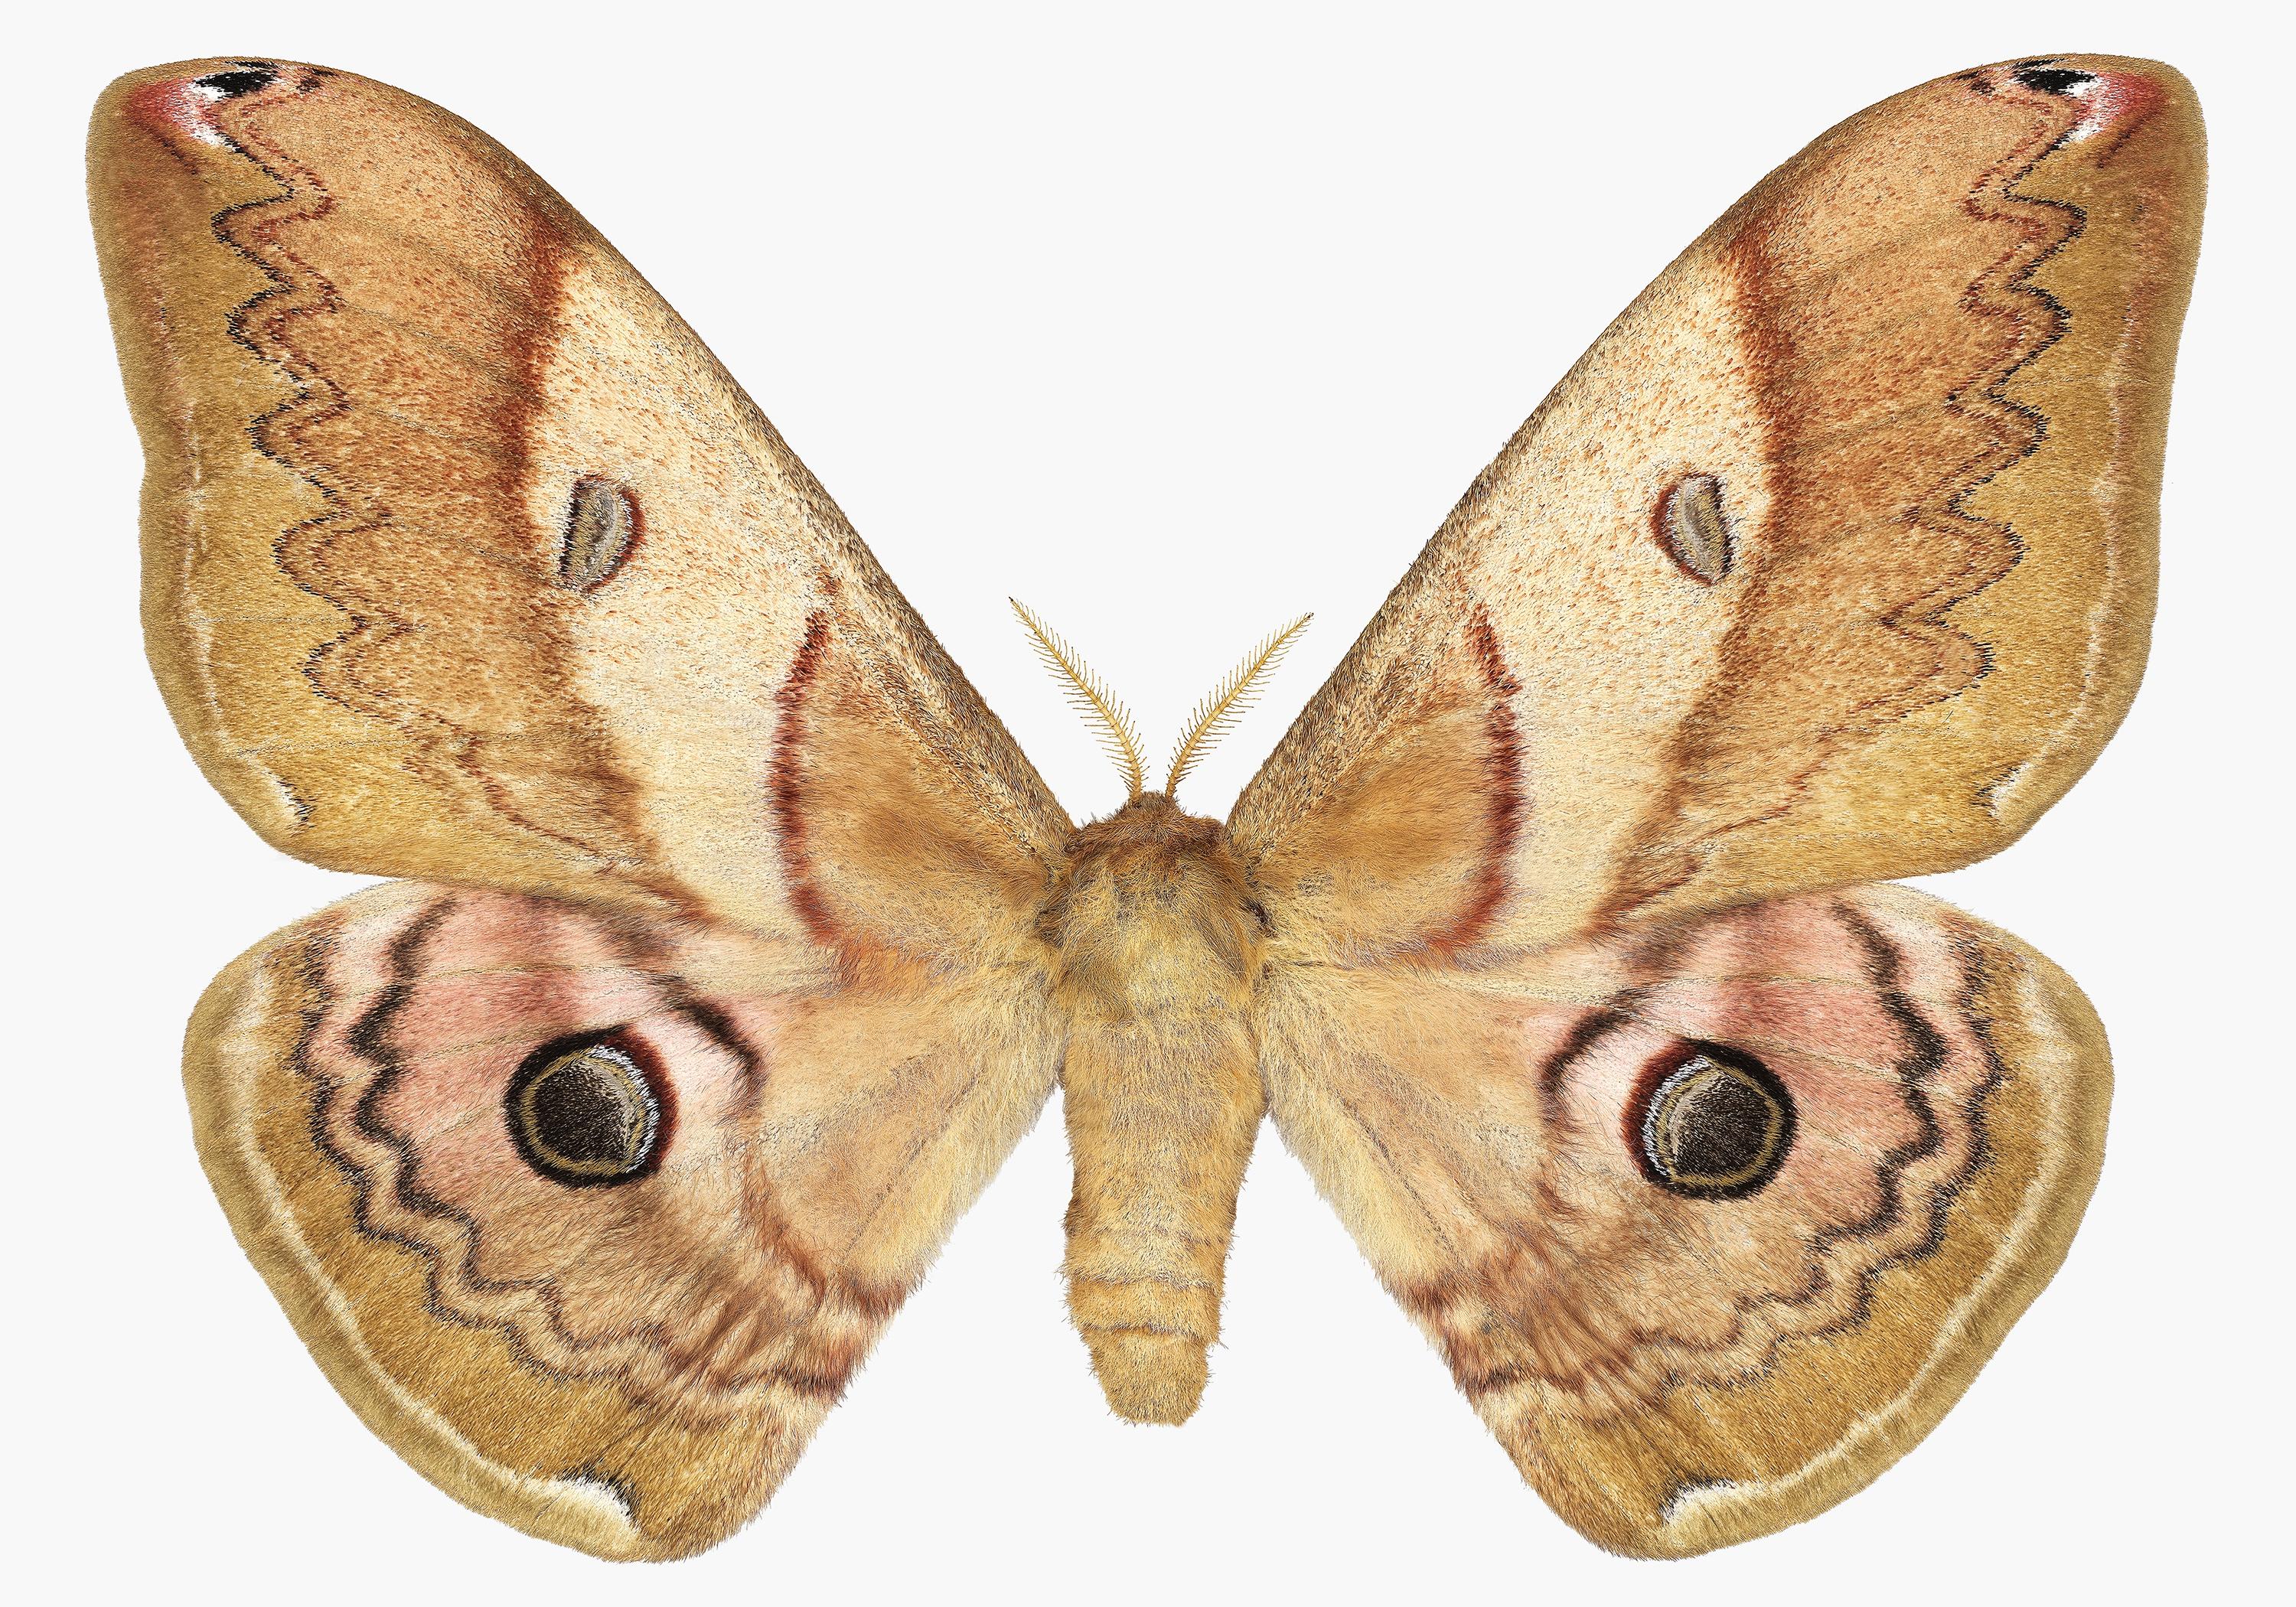 Color Photograph Joseph Scheer - Caligula Japonica femelle, Brown doré, OCHRE papillon de nuit blanc, insecte ailé Nature